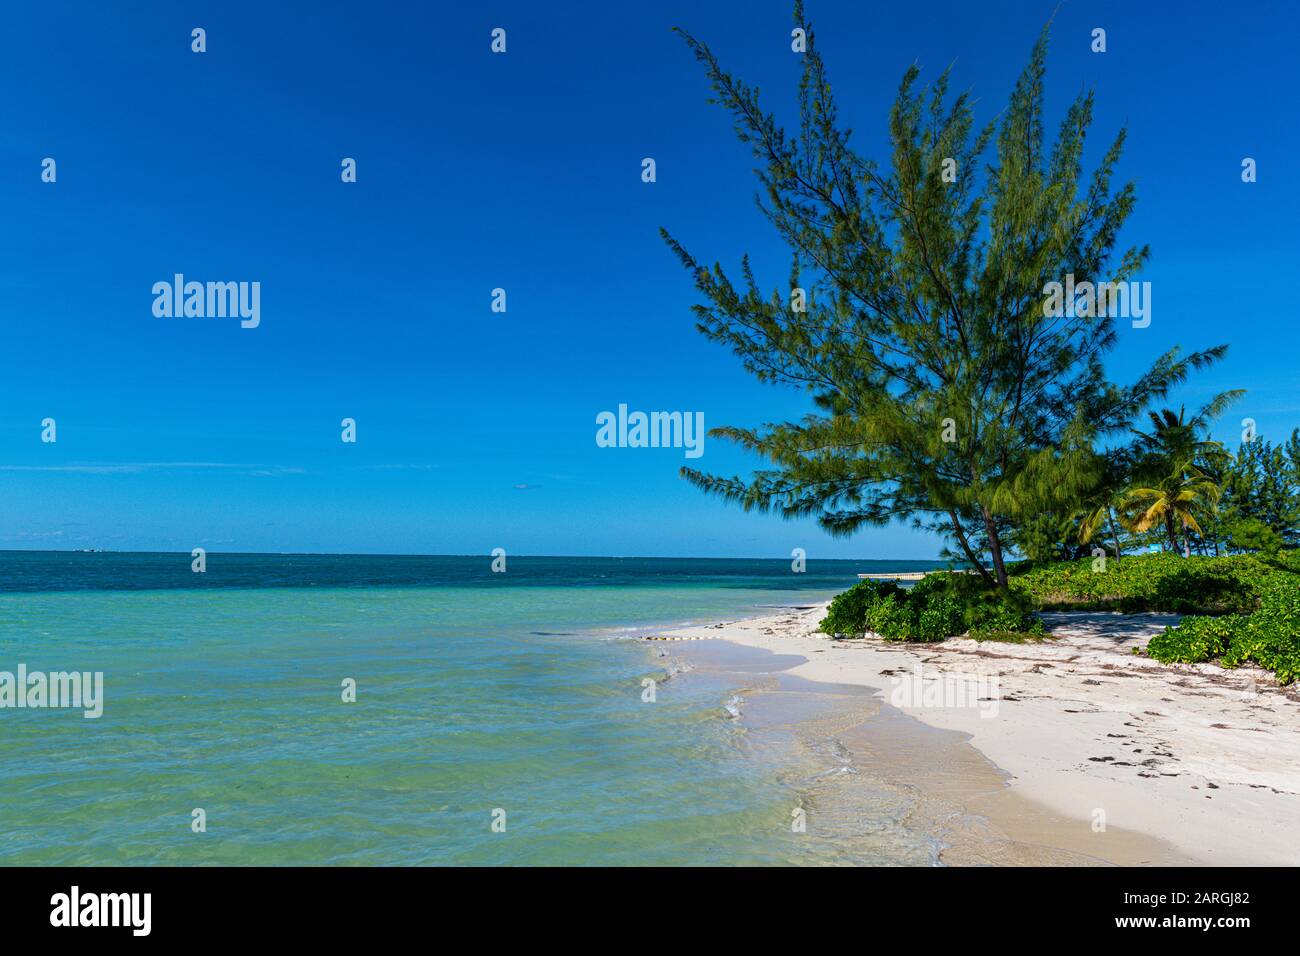 Plage De Sable Blanc, Water Cay, Grand Cayman, Îles Caïmanes, Caraïbes, Amérique Centrale Banque D'Images